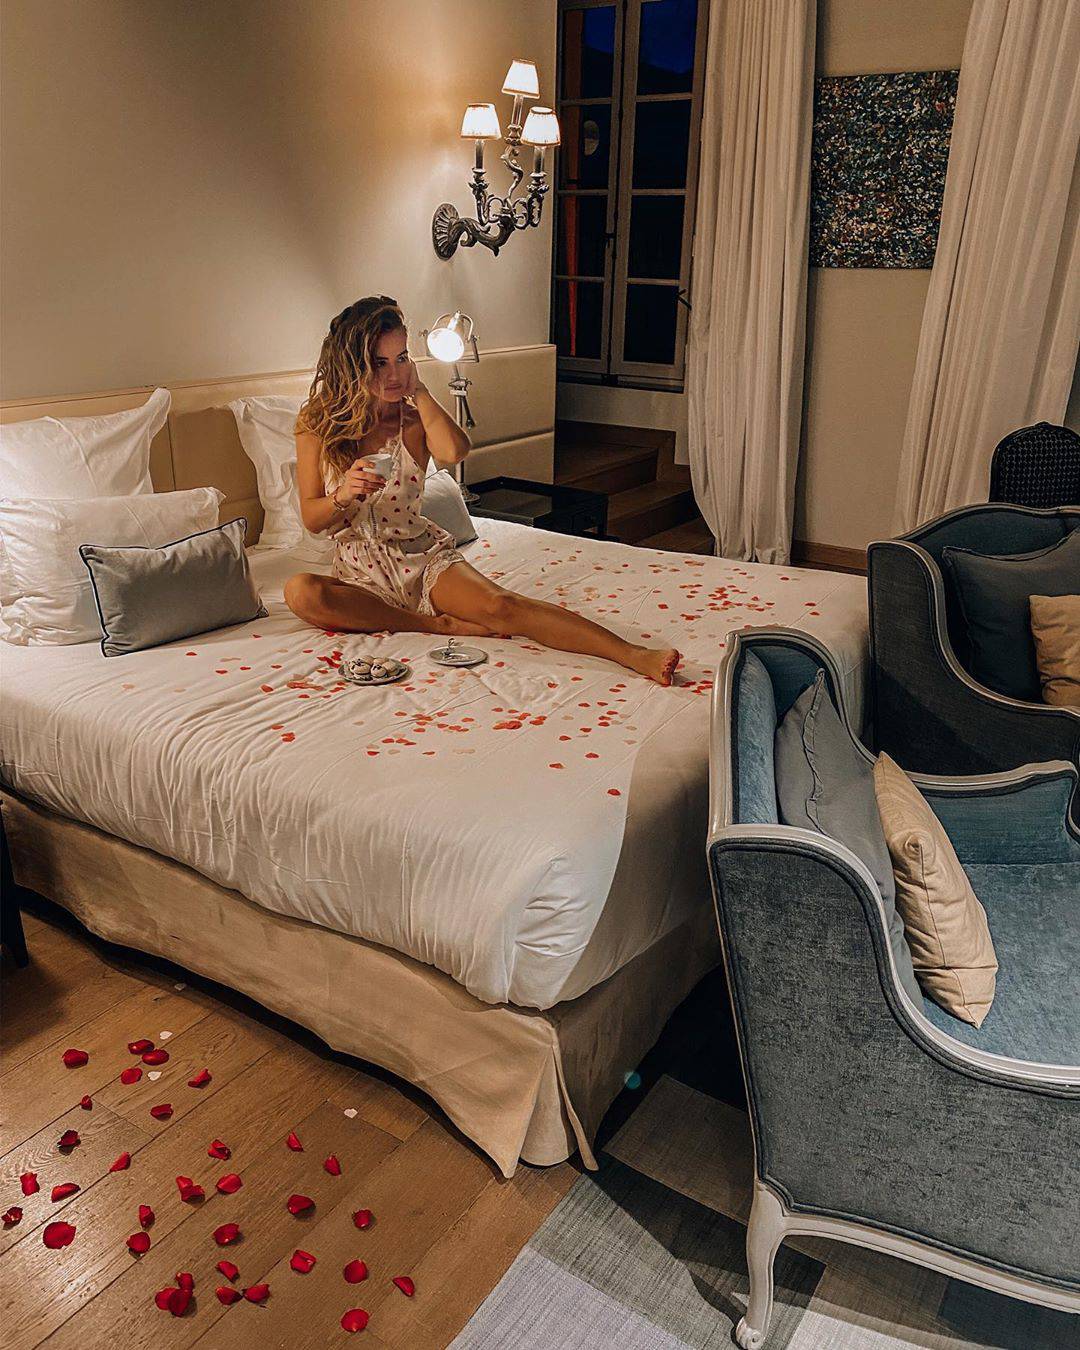 Krevet pun ružinih latica: Cura Ćalete-Cara uživa u romantici